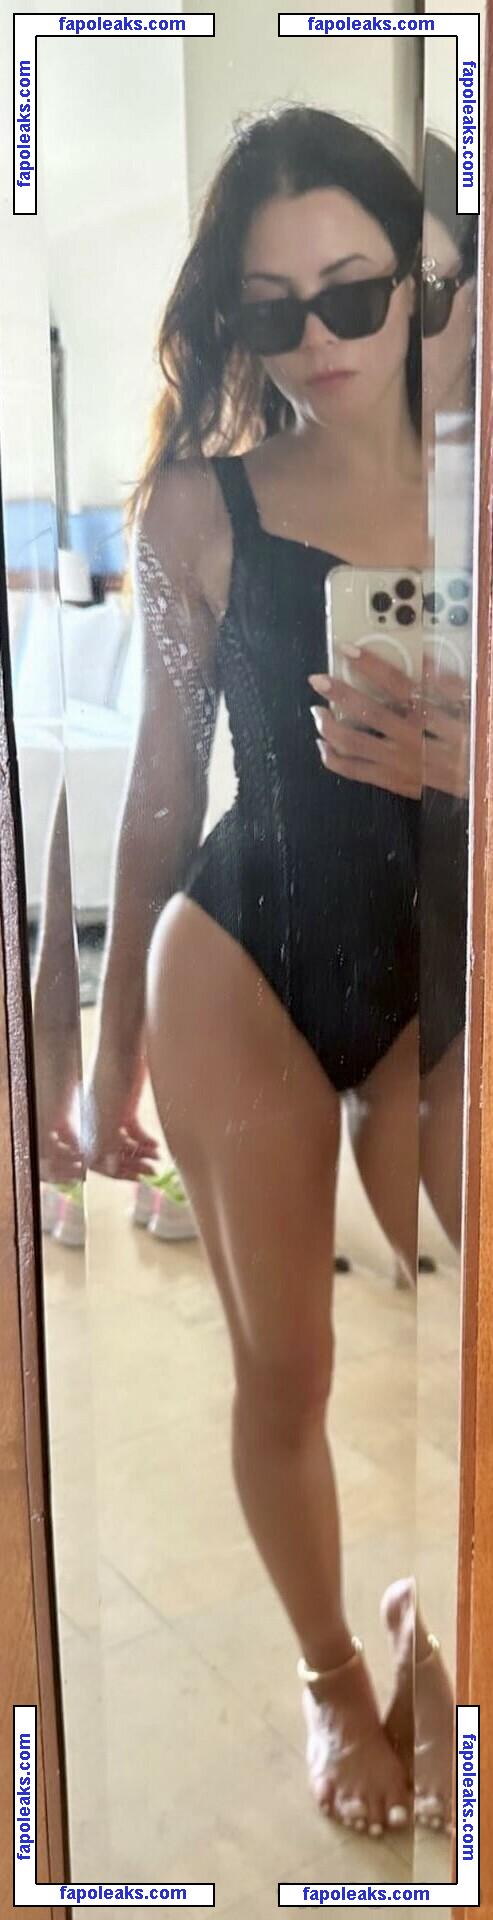 Jenna Dewan / jennadewan nude photo #0160 from OnlyFans